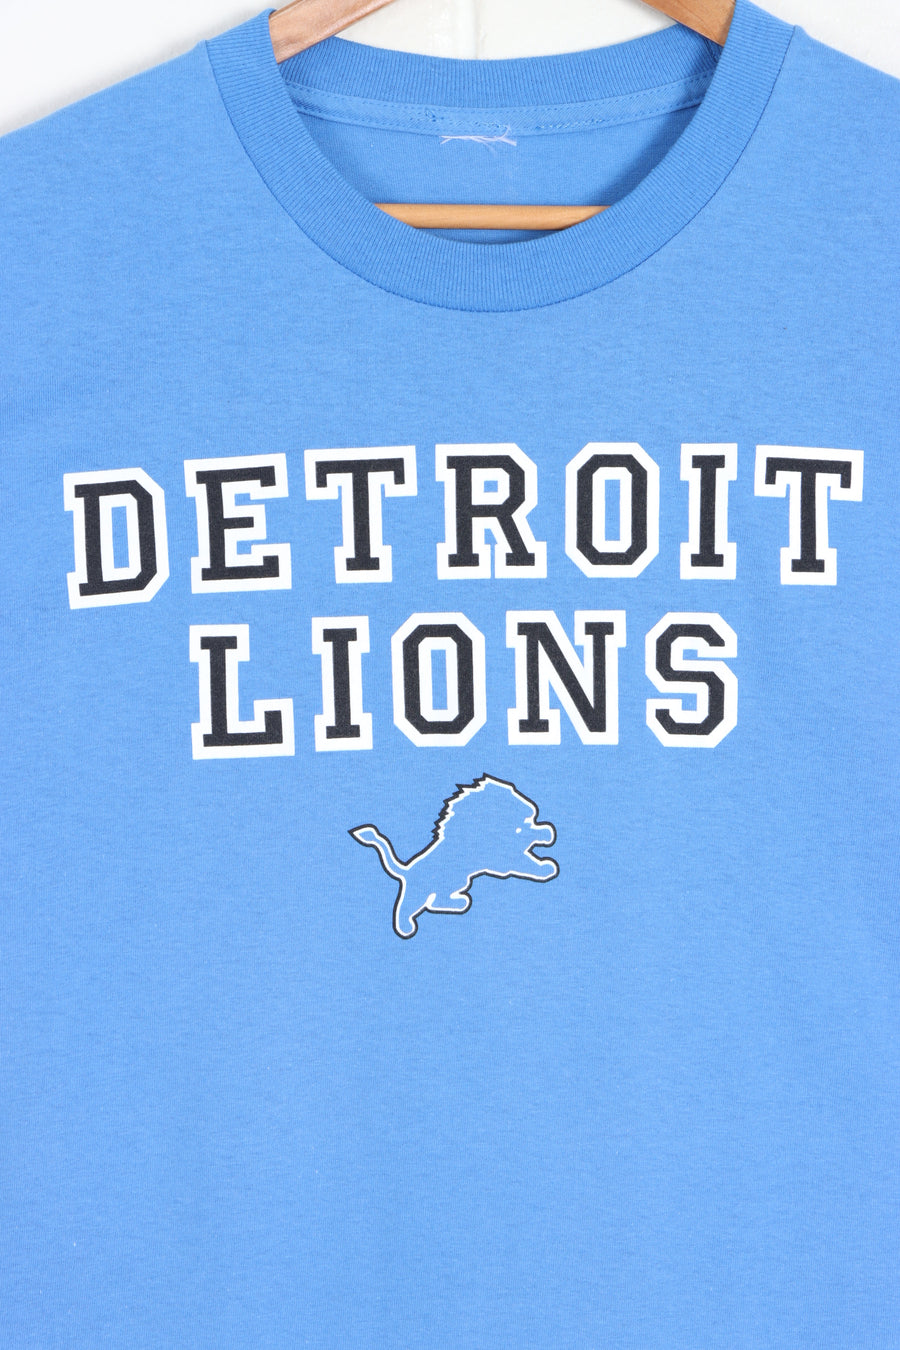 NFL Detroit Lions Logo Spell Out T-Shirt (XL) - Vintage Sole Melbourne